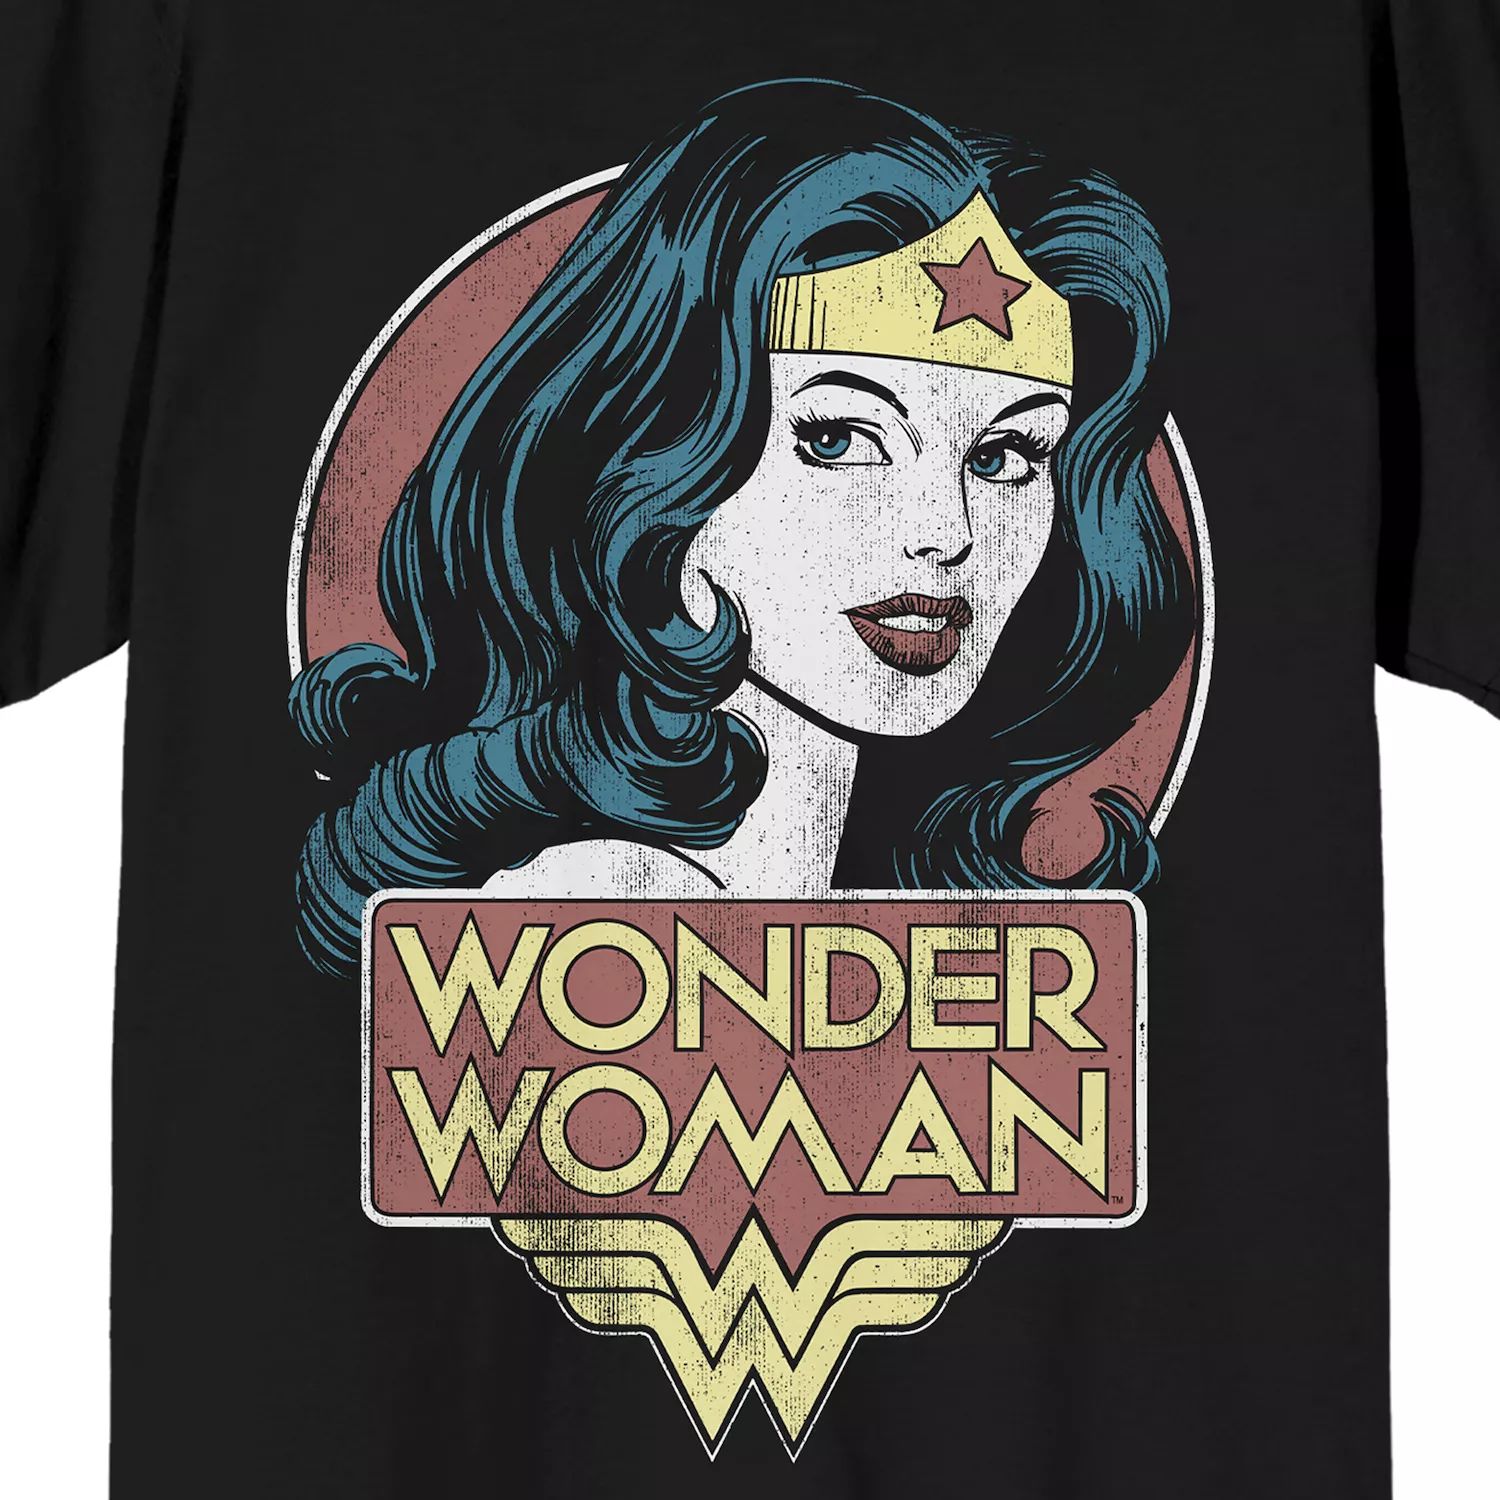 Мужская футболка Wonder Woman с портретом Licensed Character настольный еженедельник wonder woman